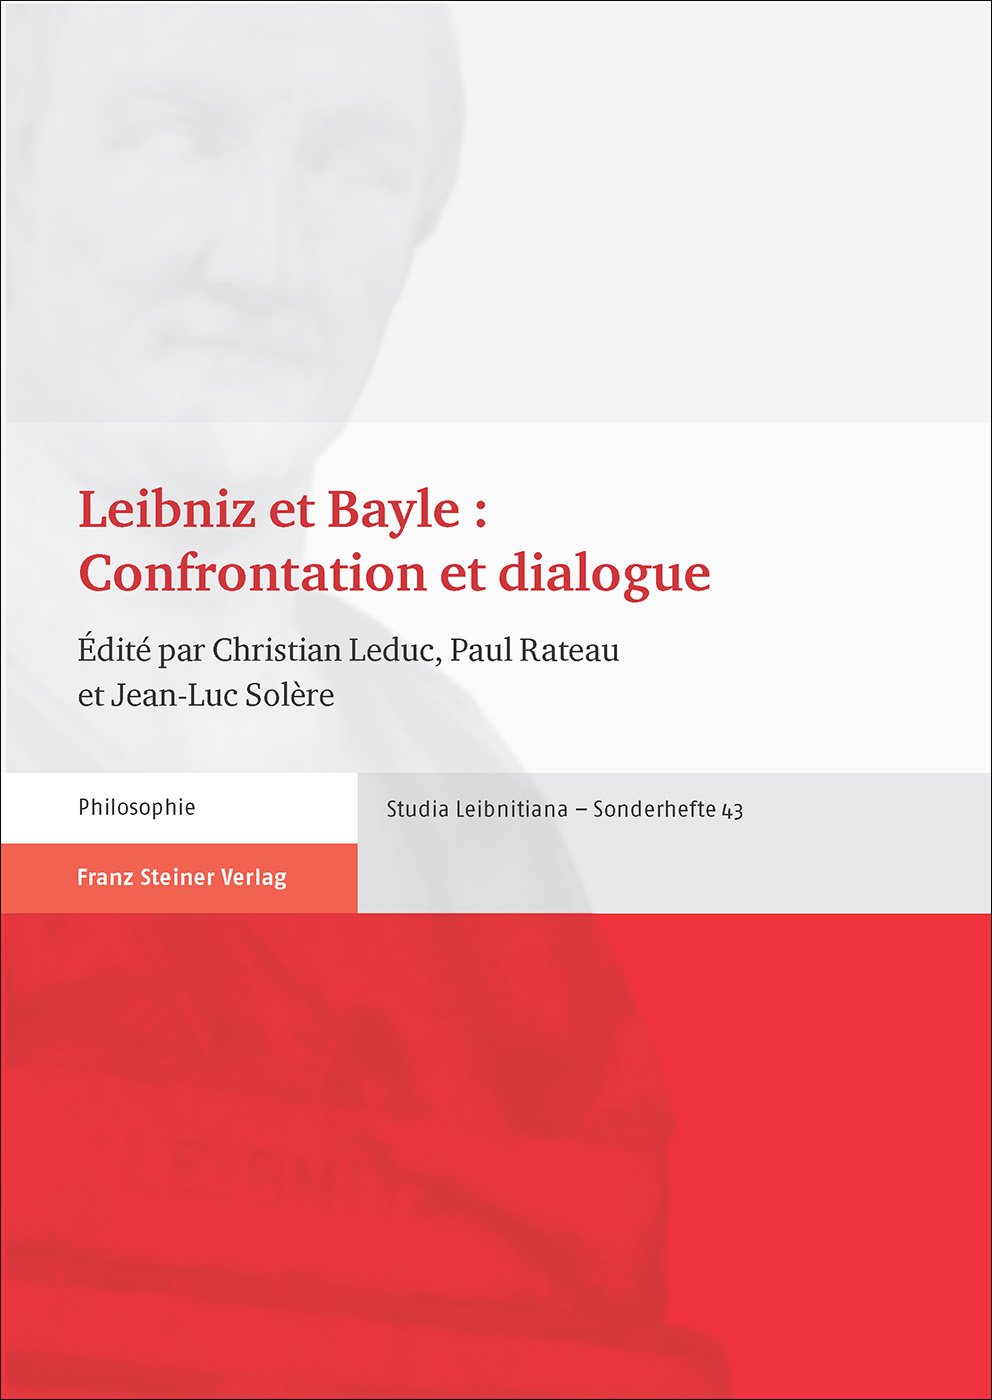 Leibniz et Bayle : Confrontation et dialogue